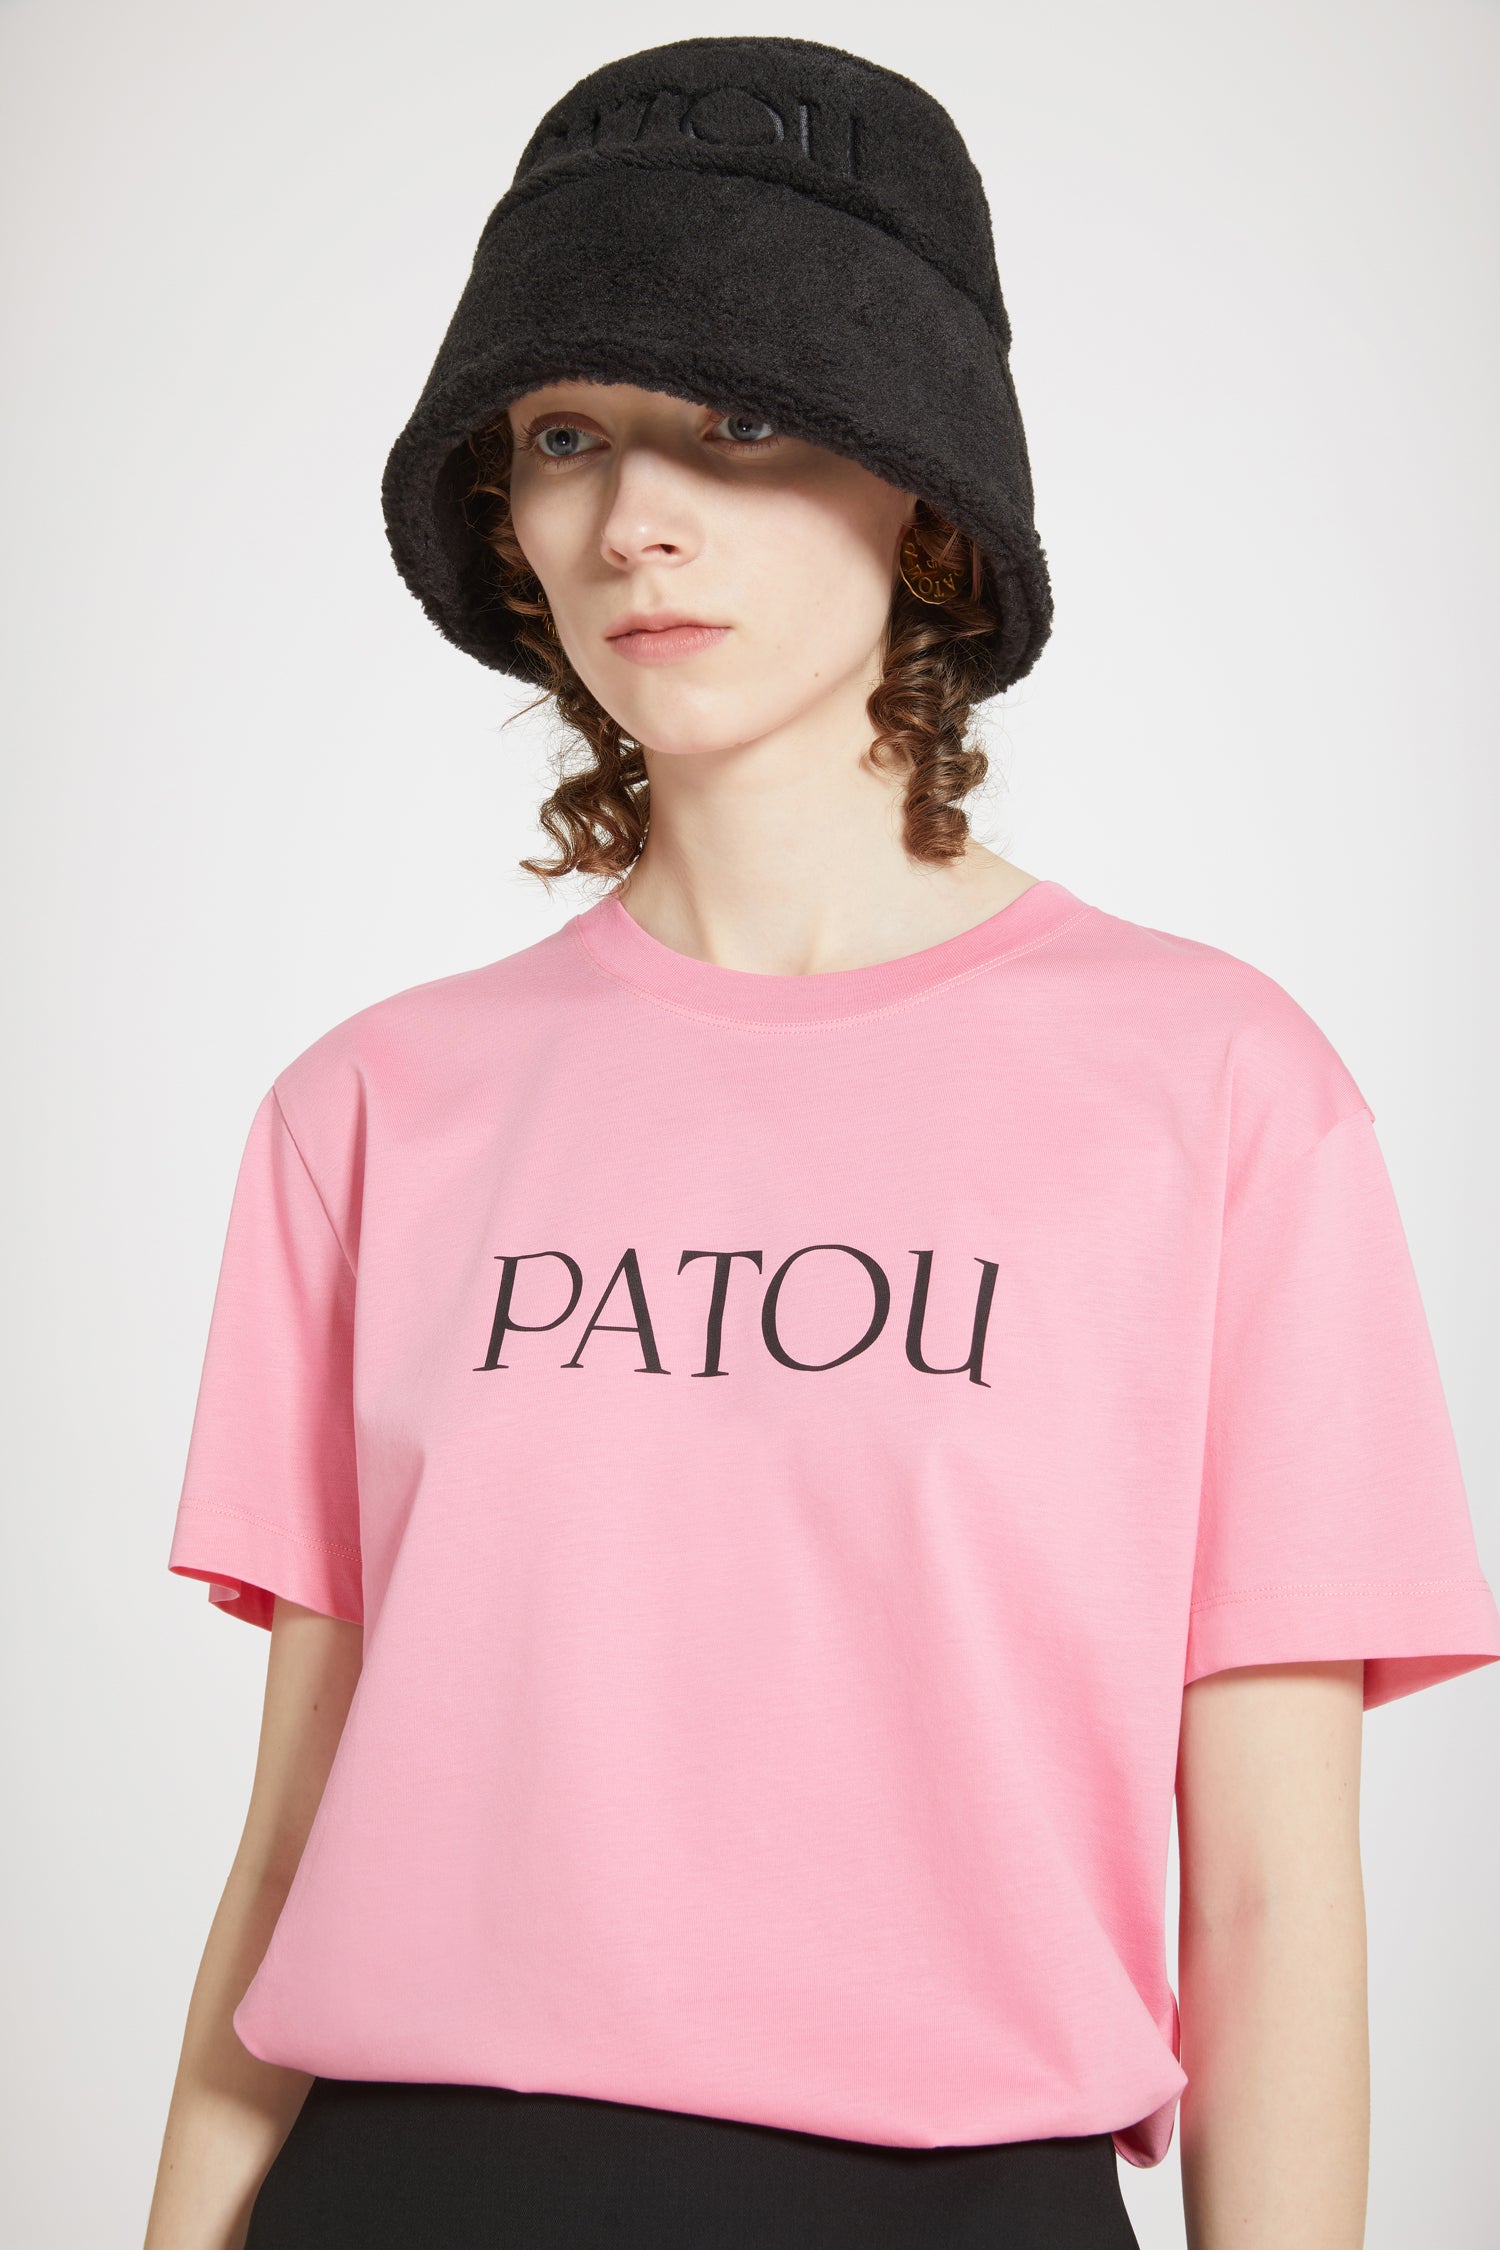 Patou logo t-shirt in organic cotton - Hot Pink - XXS